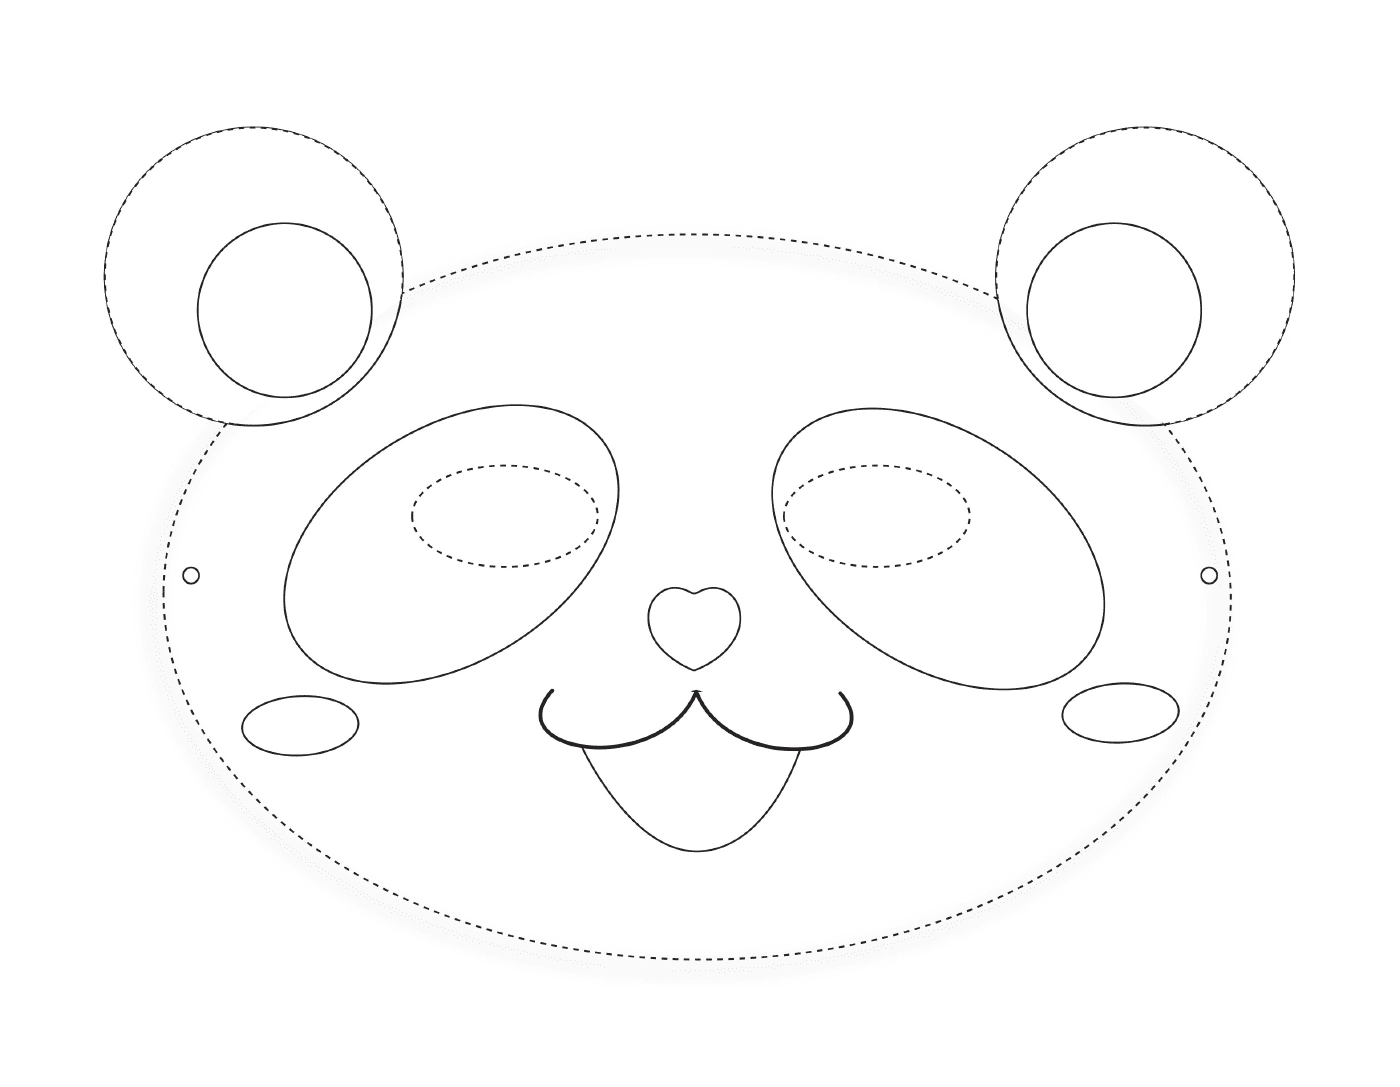  Maschera panda per colorare 